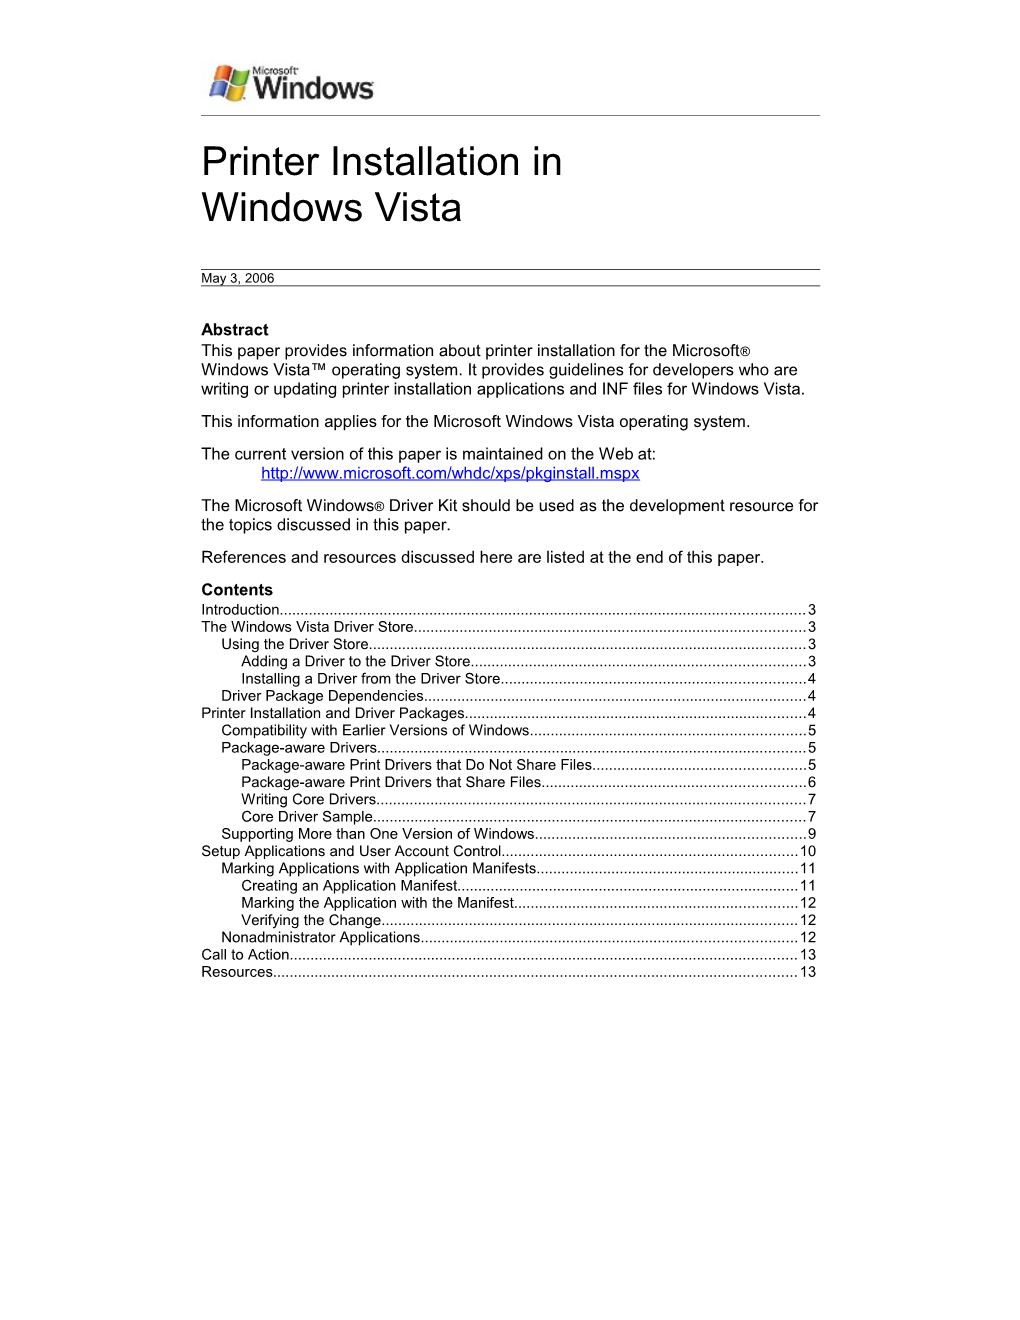 Printer Installation in Windows Vista